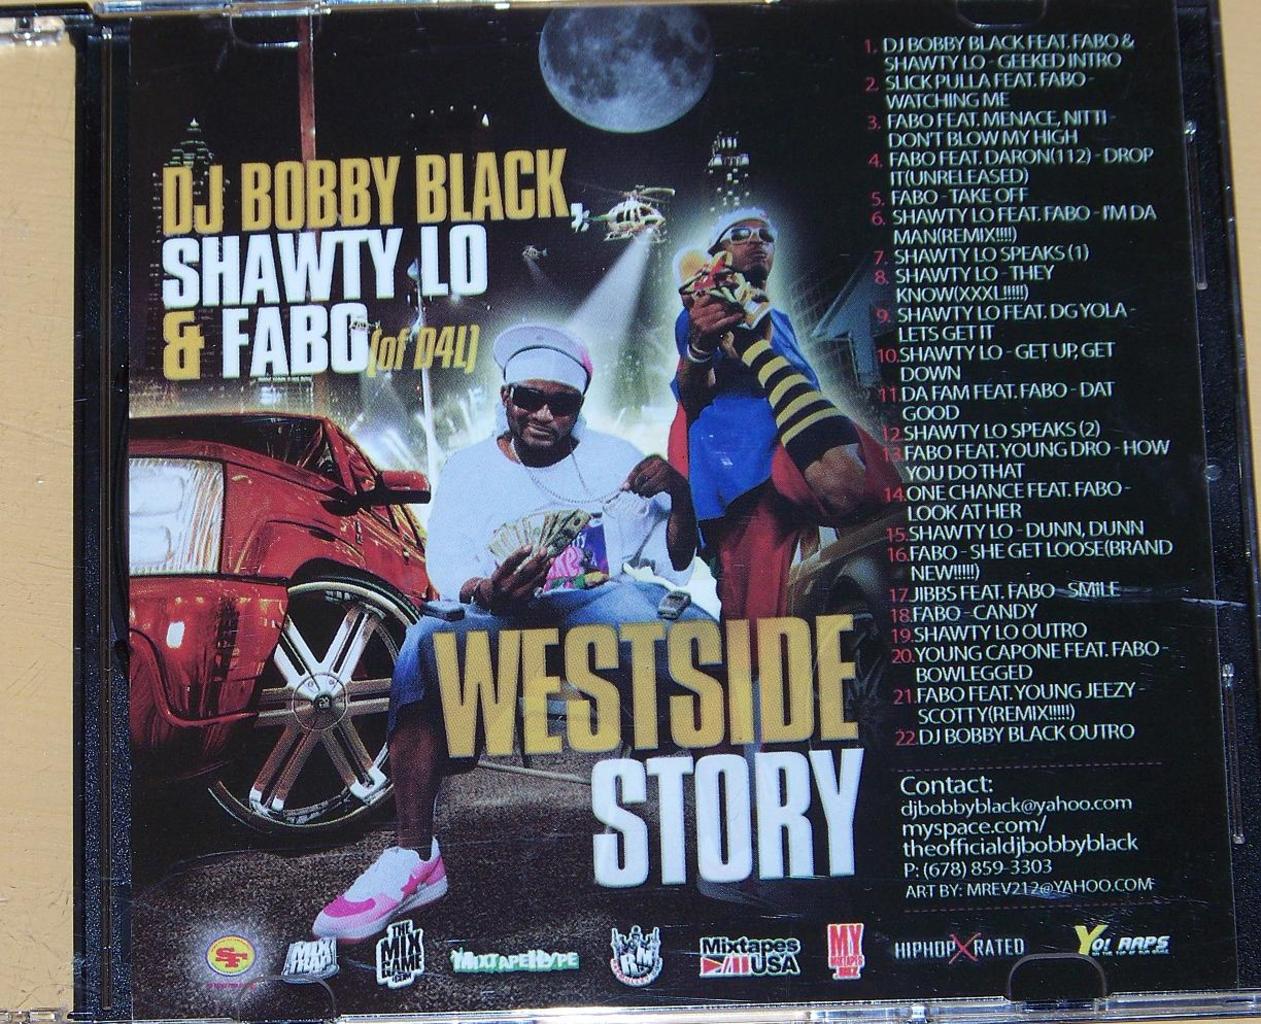 VA-DJ_Bobby_Black_Shawty_Lo_And_Fabo-Westside_Story-(Bootleg)-2007-RAGEMP3